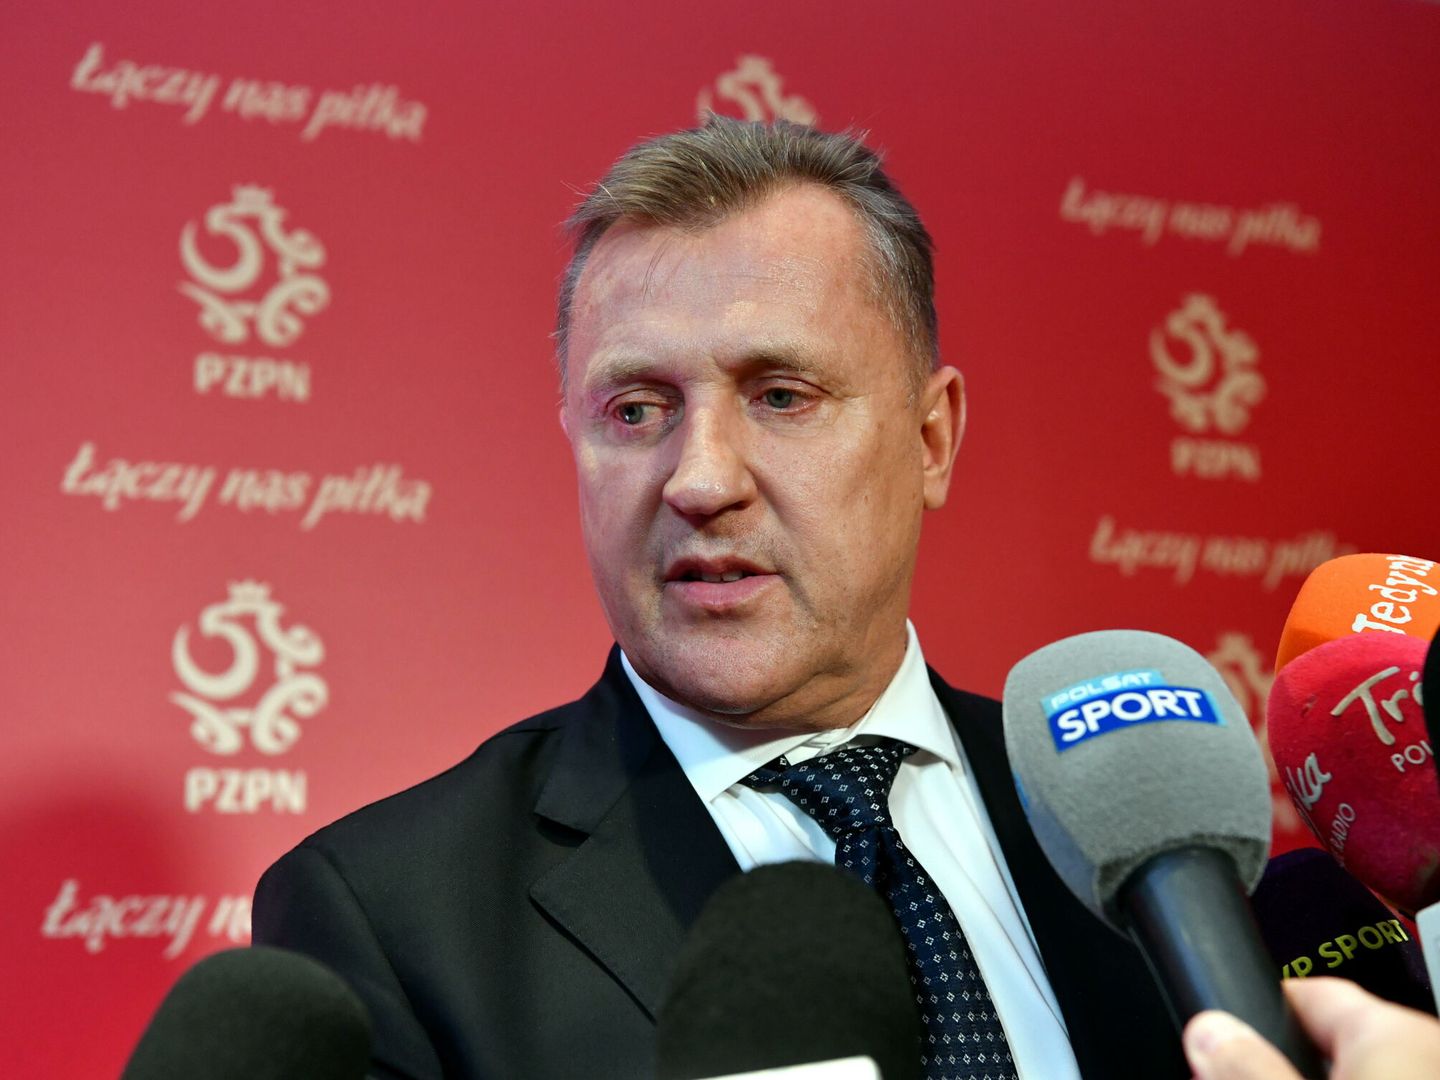 Cezary Kulesza, presidente de la Federación de Polonia. (Reuters/Martin Fish)